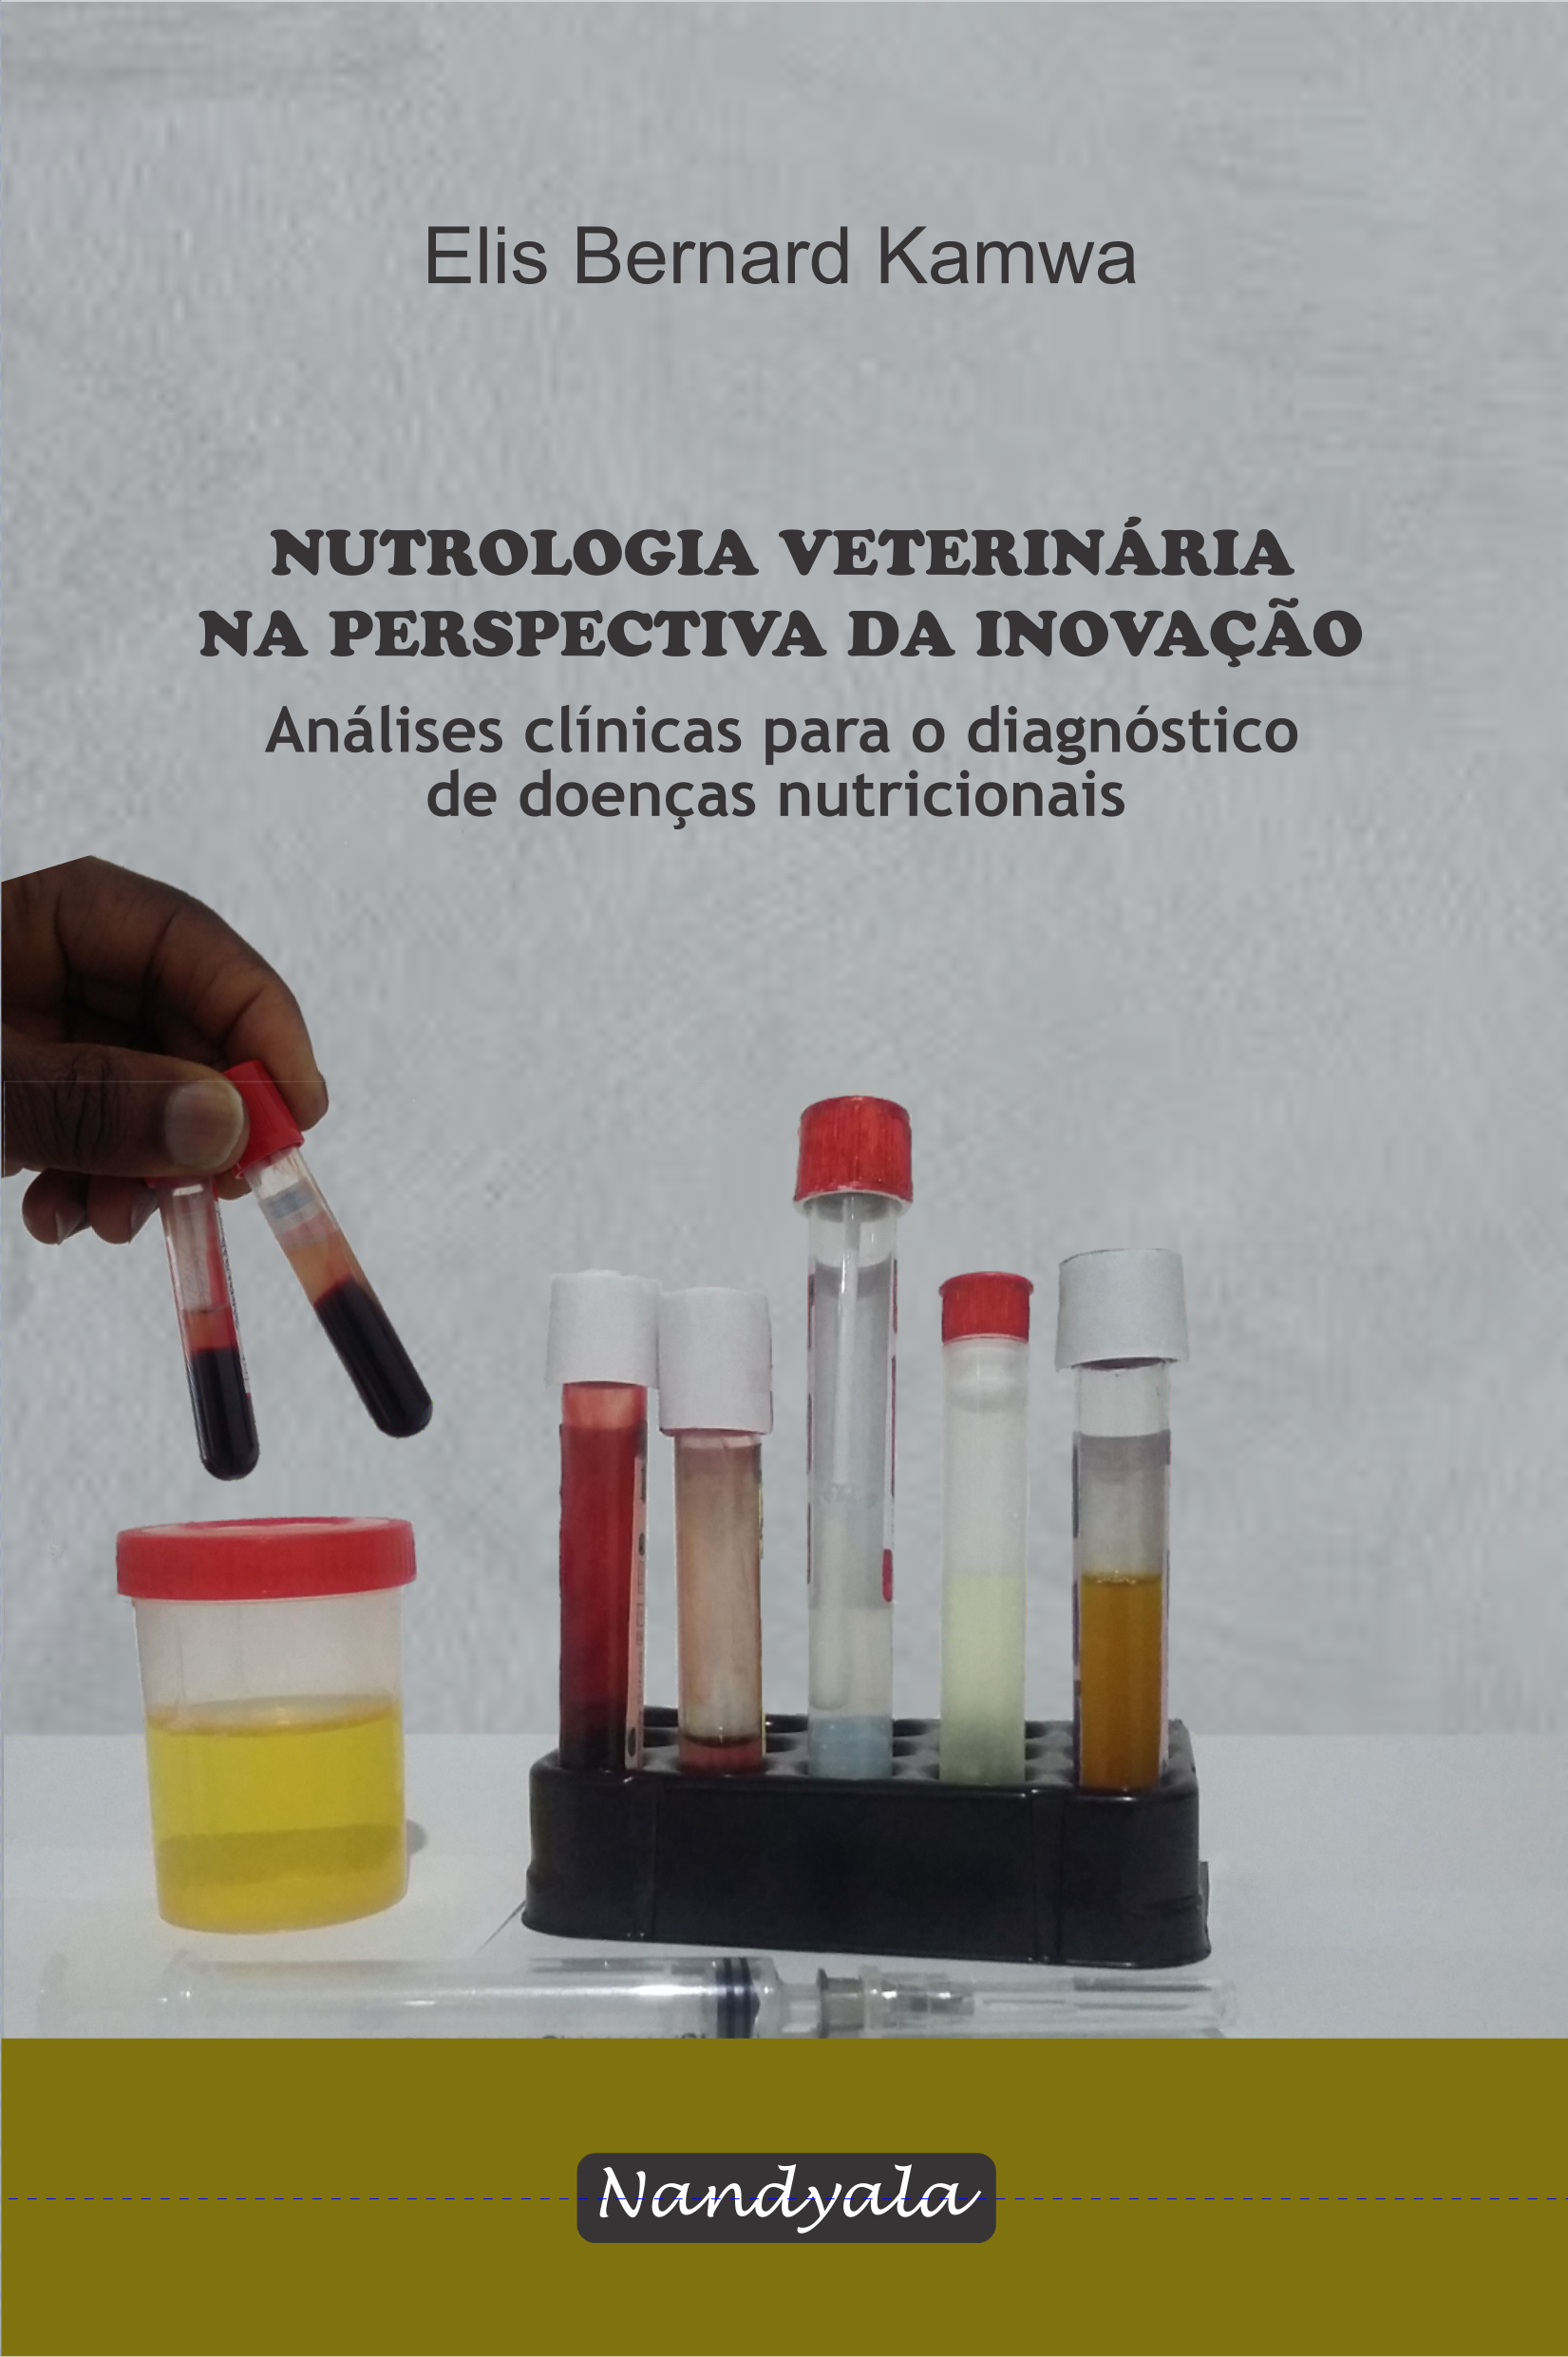 Nutrologia veterinária na perspectiva da inovação: análises clínicas para diagnóstico de doenças